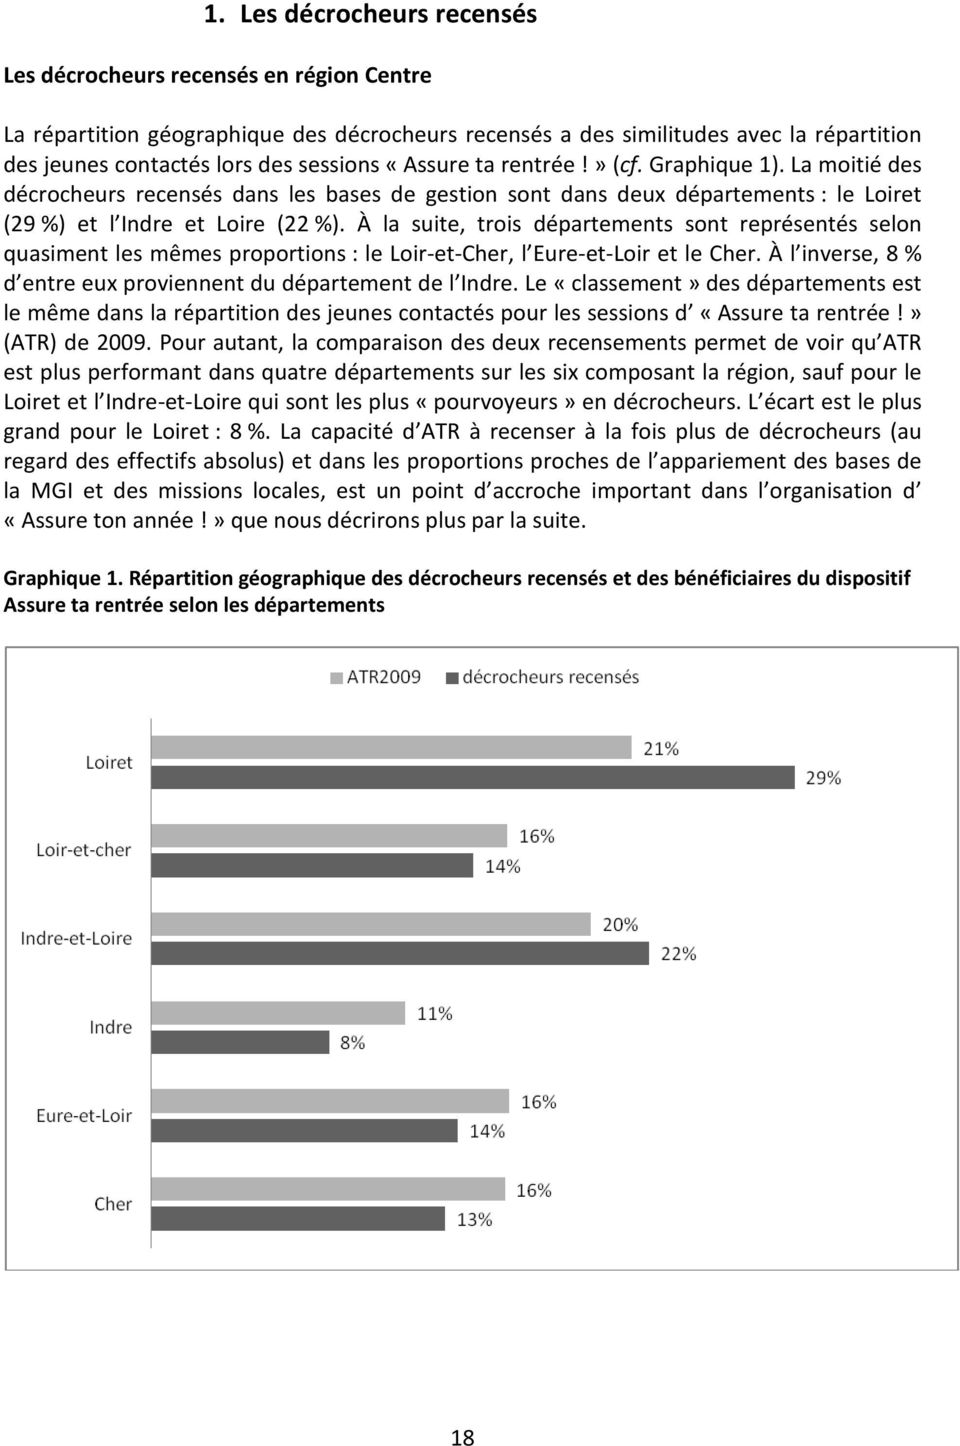 À la suite, trois départements sont représentés selon quasiment les mêmes proportions : le Loir-et-Cher, l Eure-et-Loir et le Cher. À l inverse, 8 % d entre eux proviennent du département de l Indre.